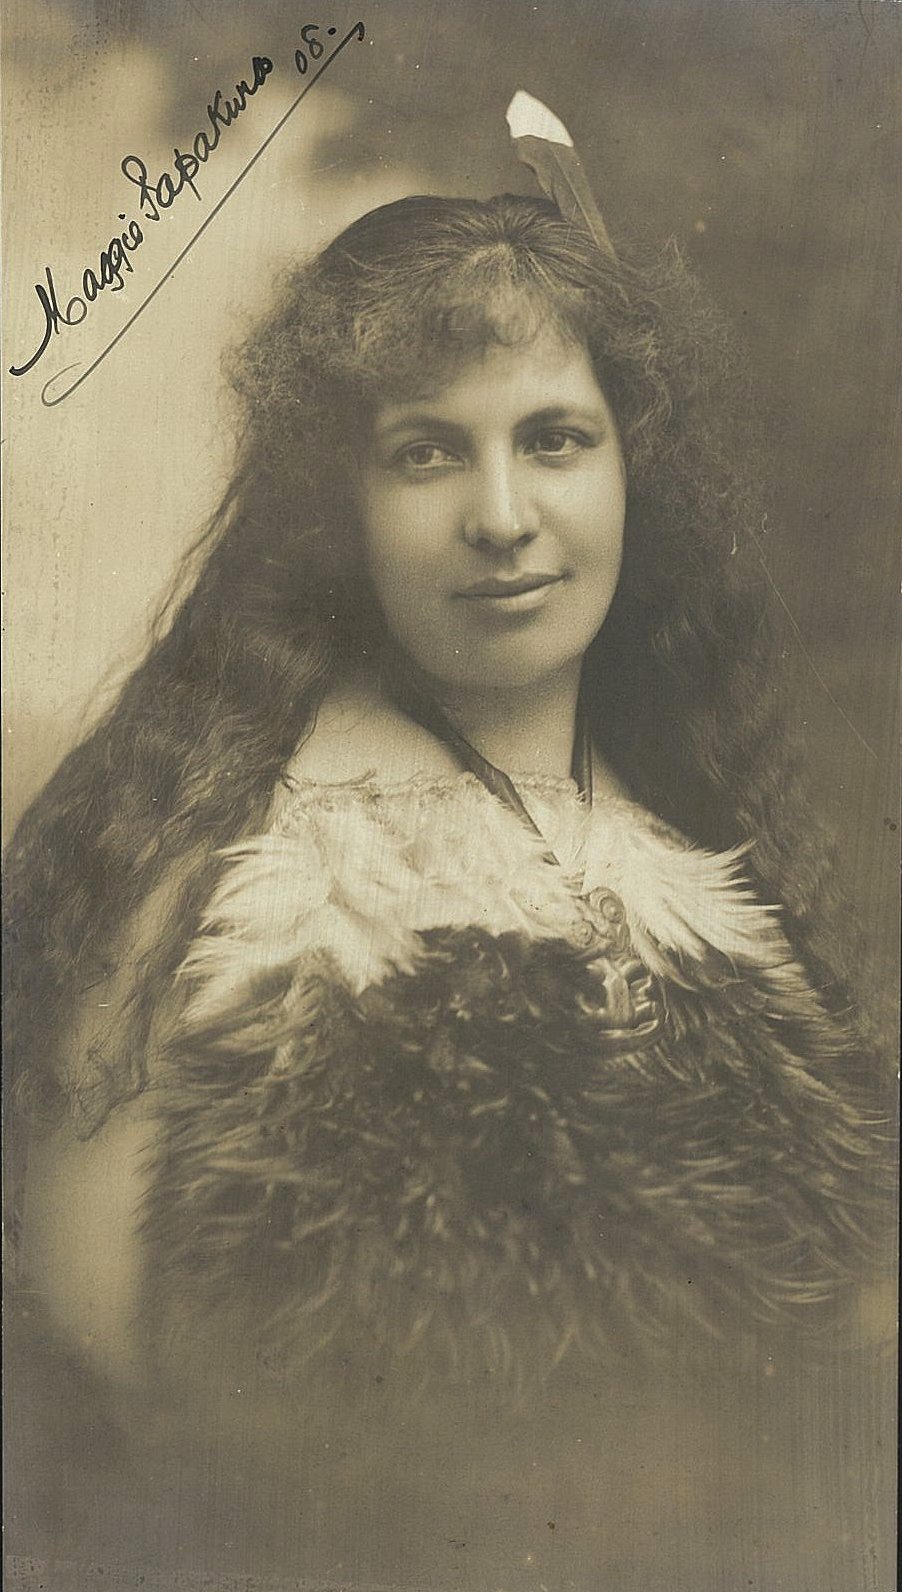 Papakura in 1908